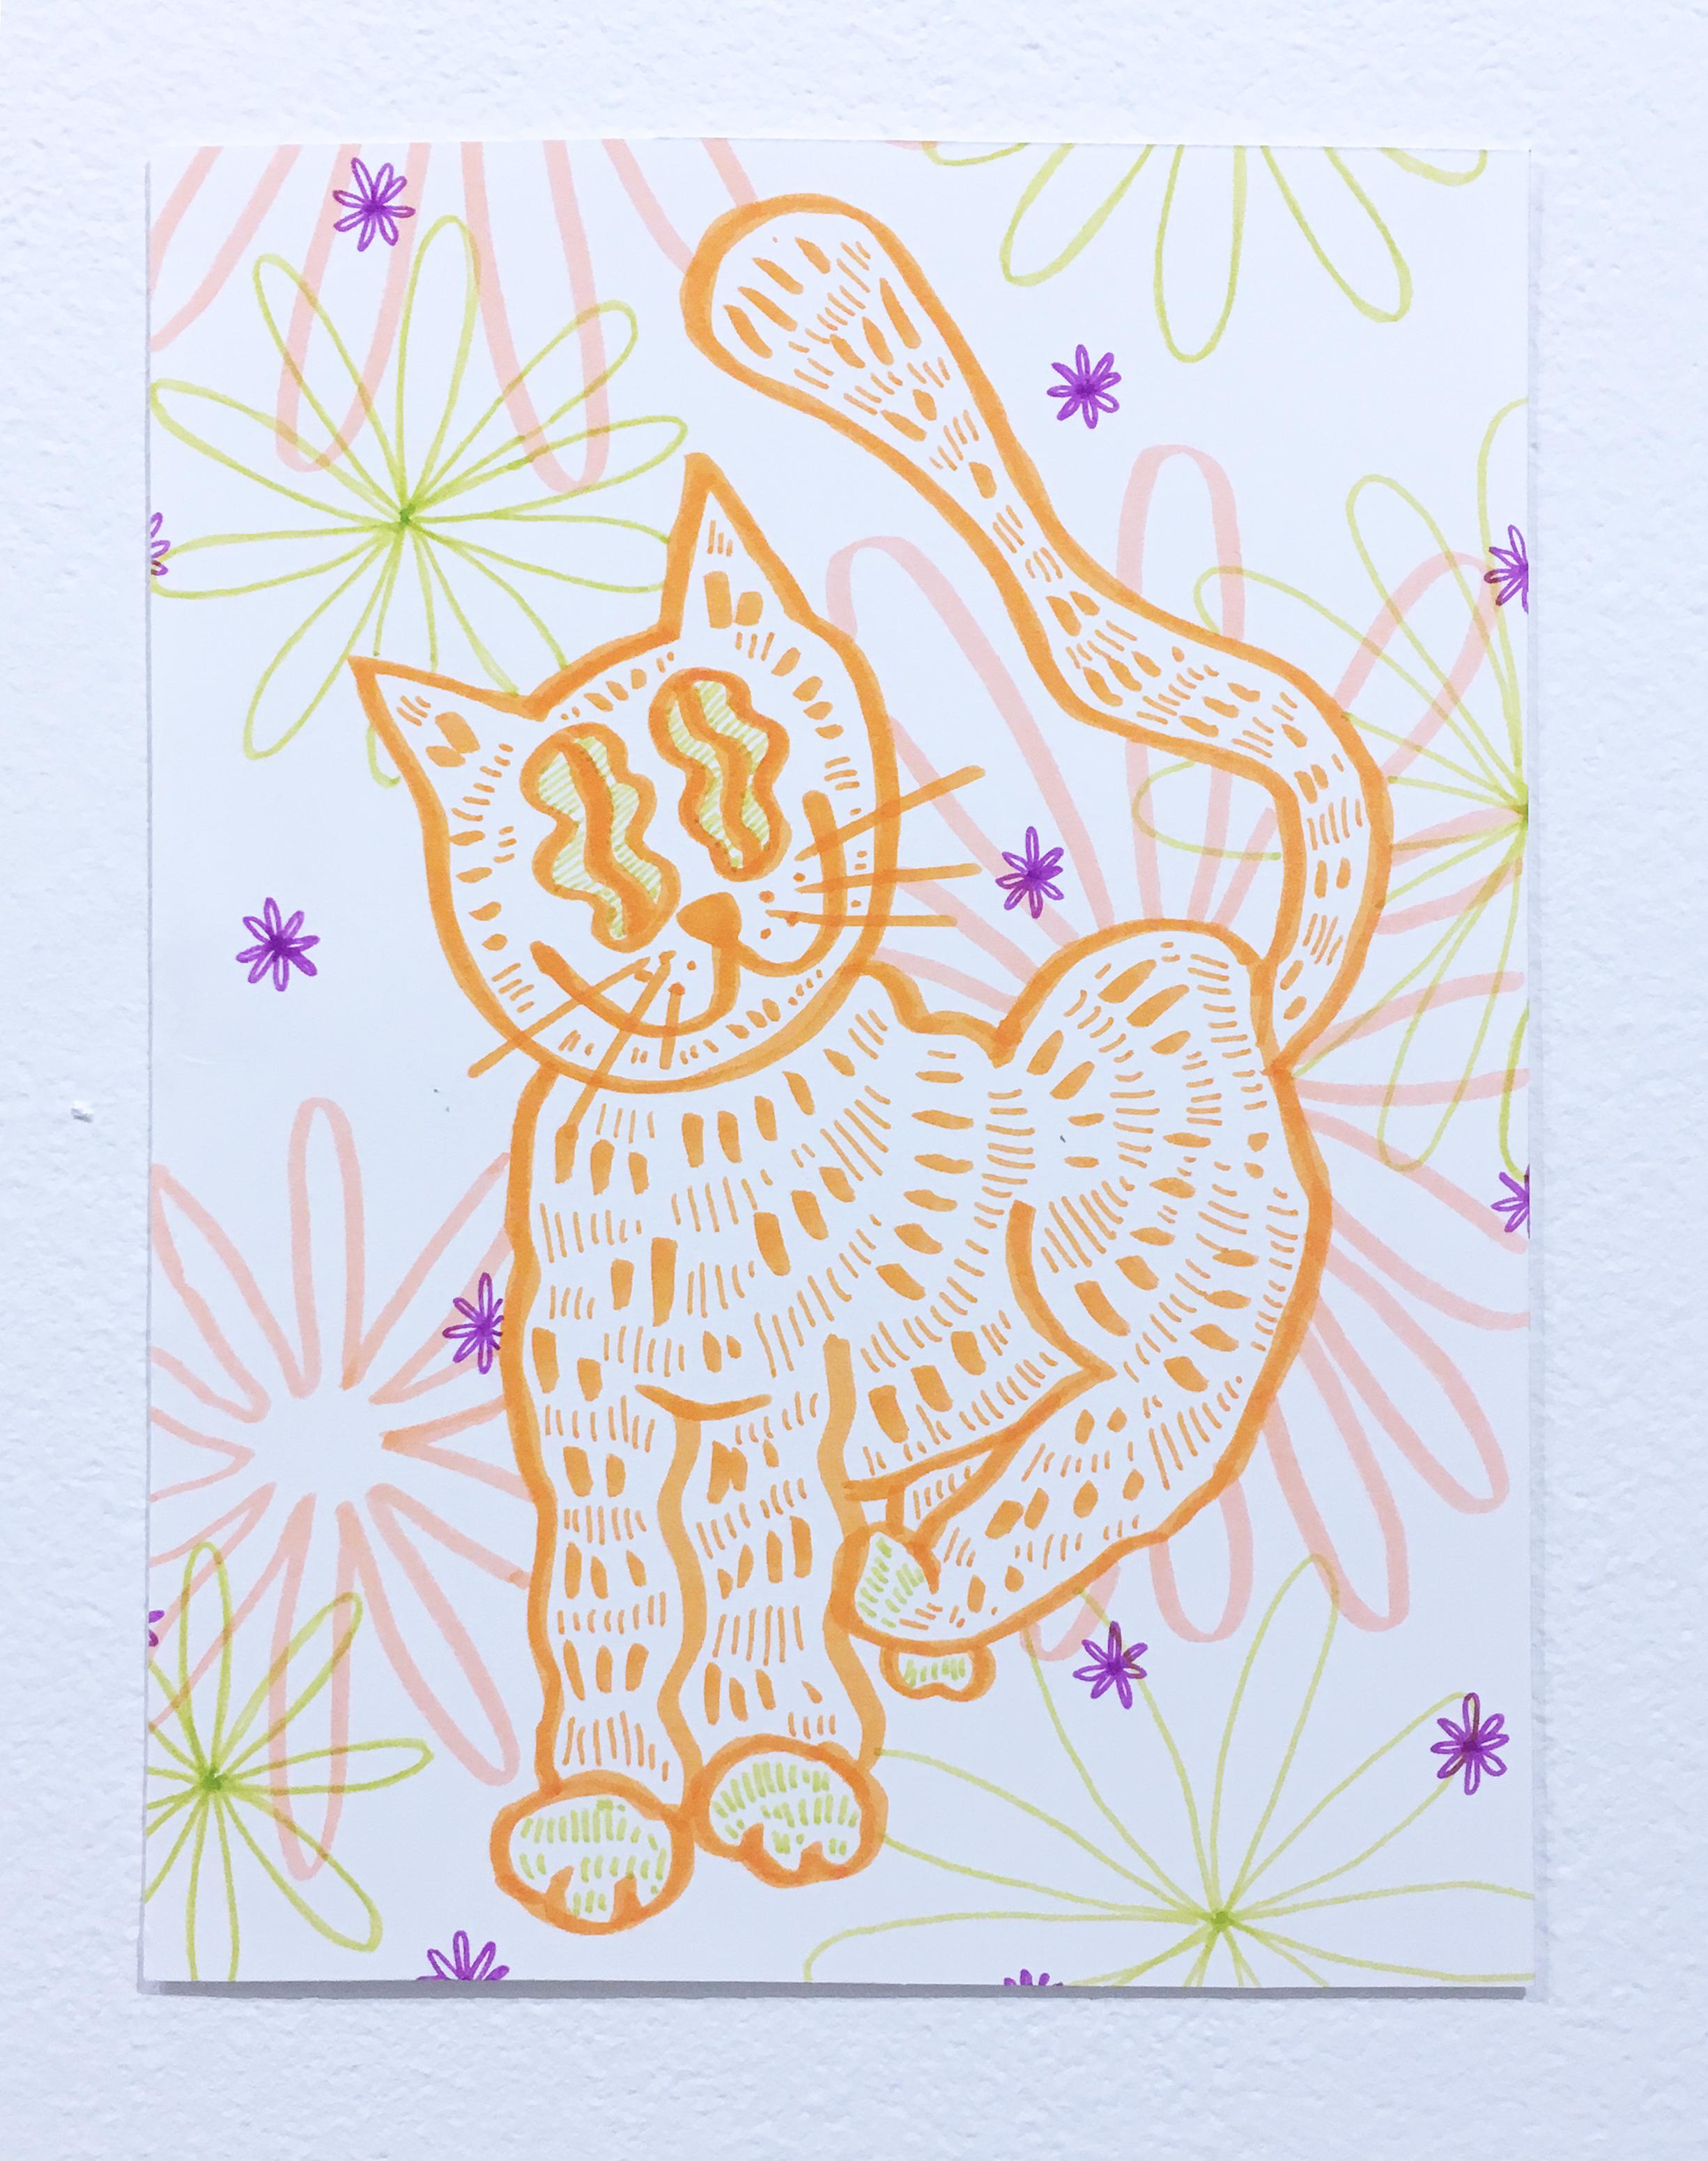 Soft and Fuzzy, dessin sur papier à l'aquarelle, chat avec fleurs, motif graphique ondulé - Art de SarahGrace